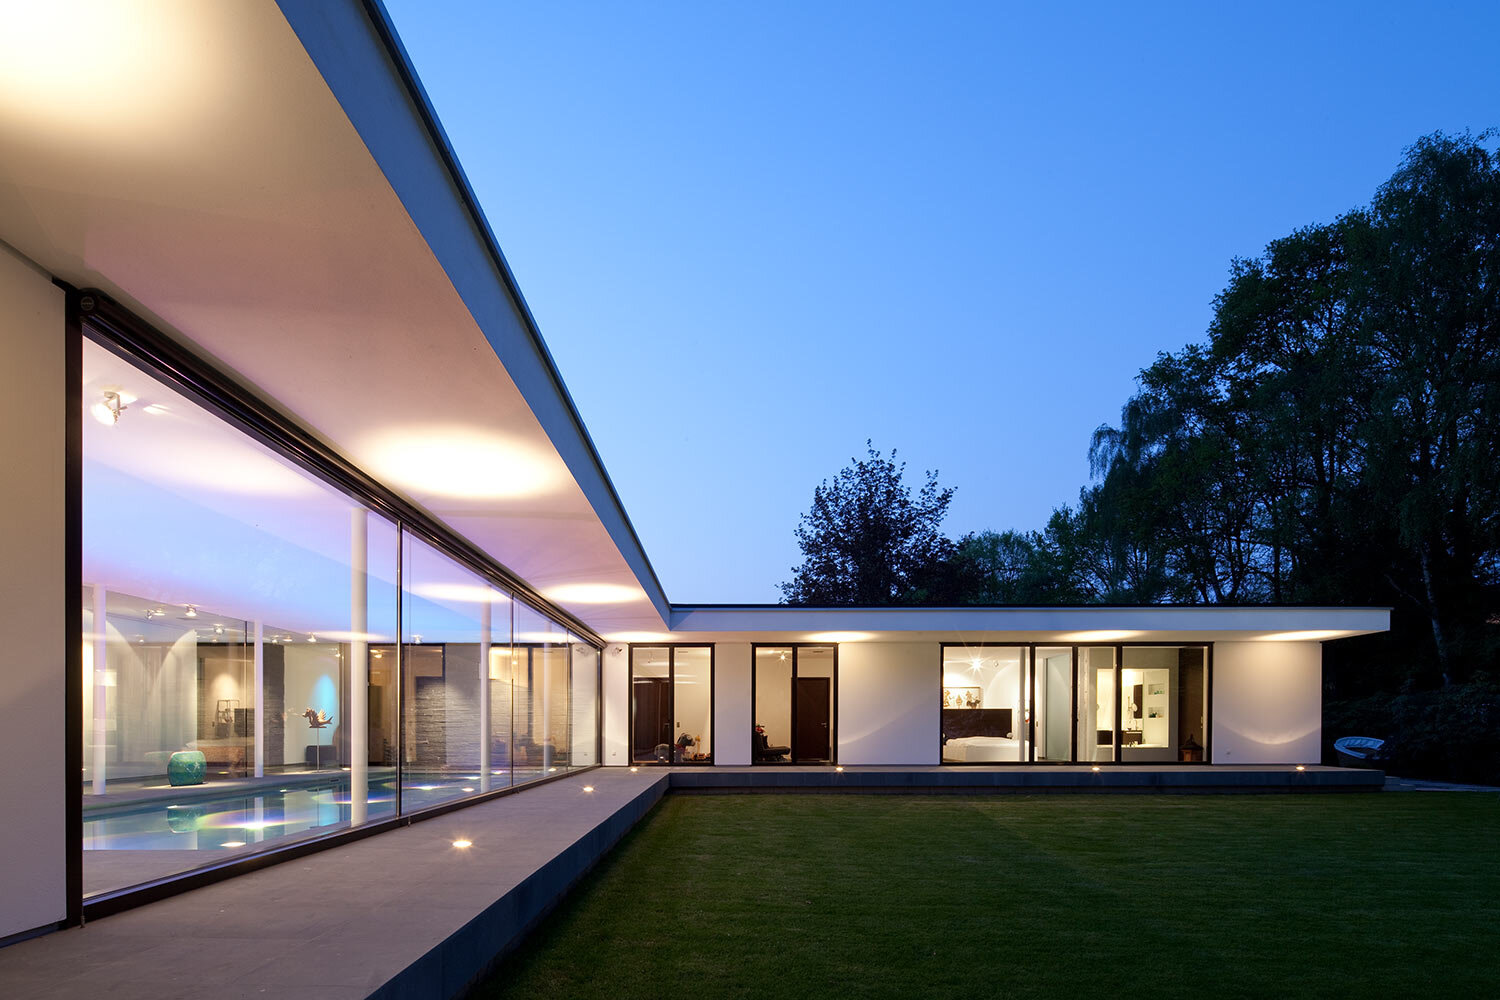 01_ht_architektur_villa_modern_wohnen_muenster_terrasse_garten_putz.jpg